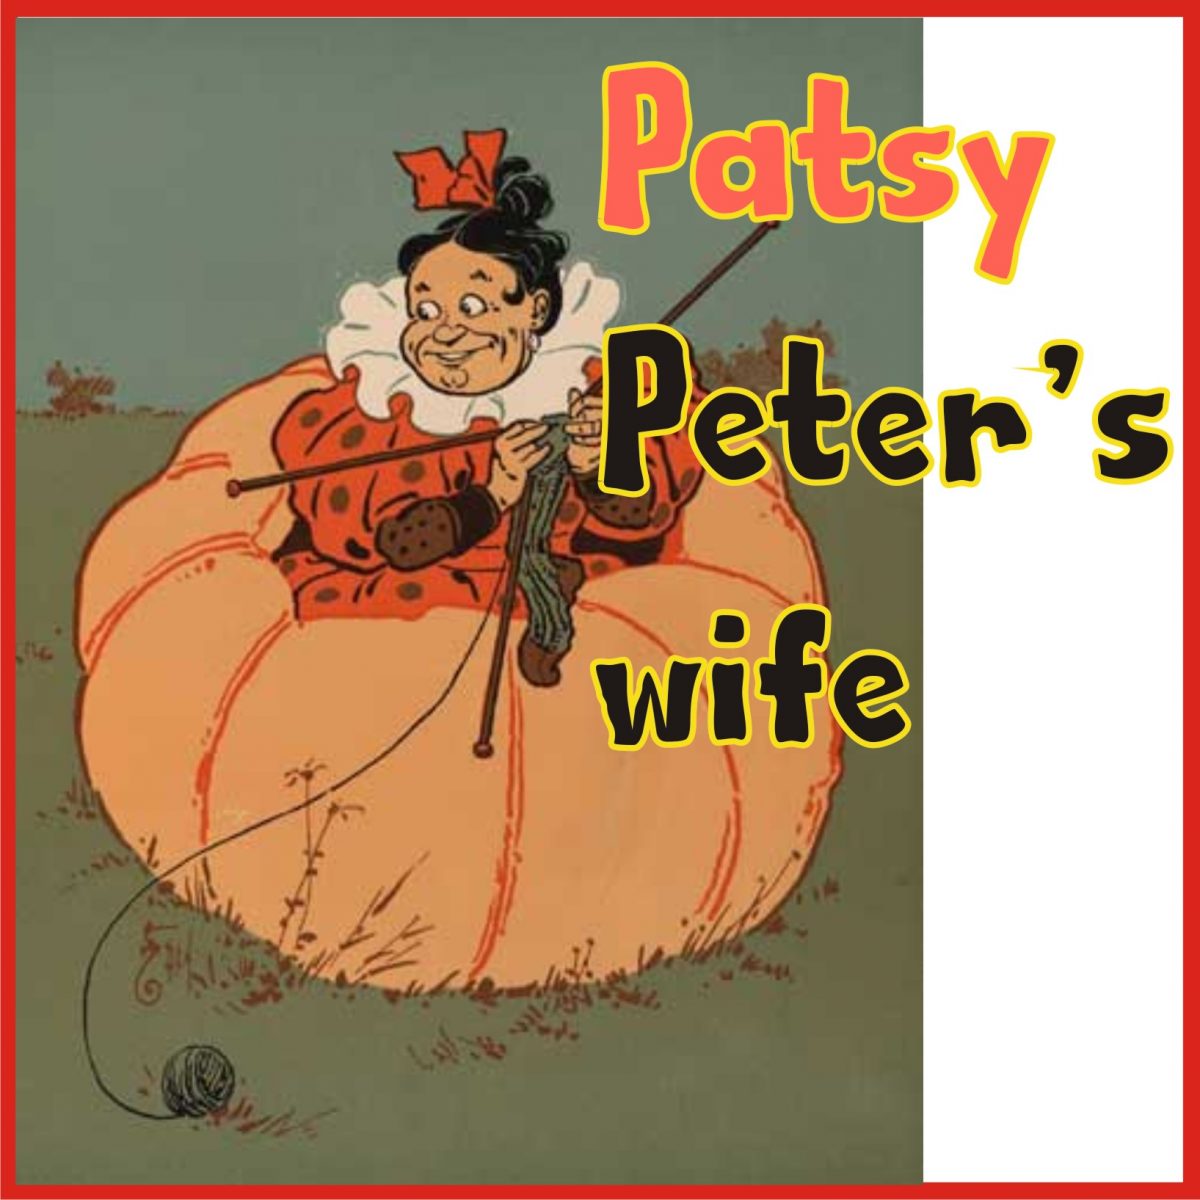 Peter Peter Pumpkin Eater